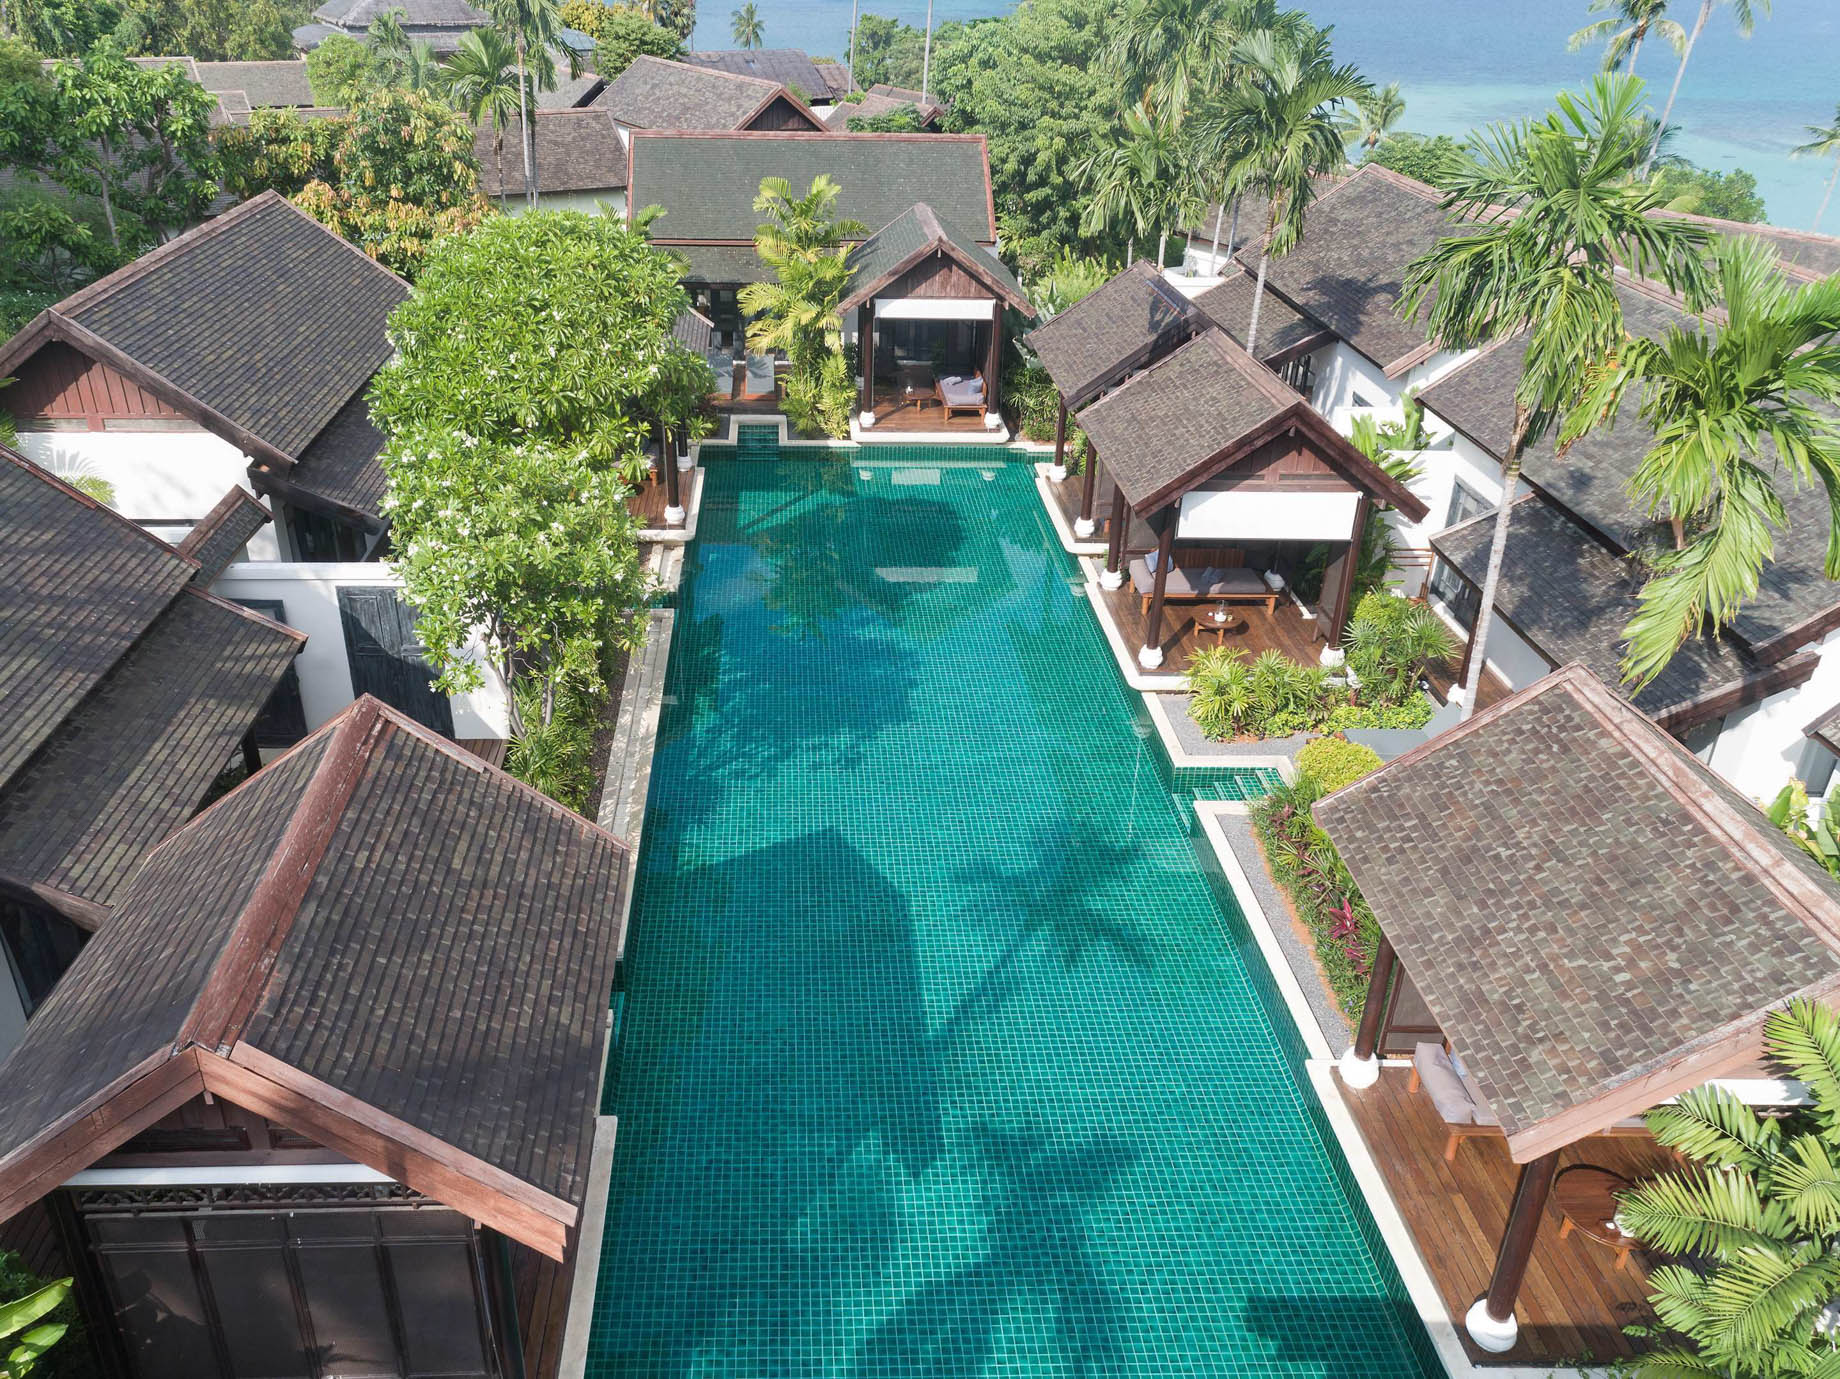 Anantara Lawana Koh Samui Resort – Thailand – Lawana Residence